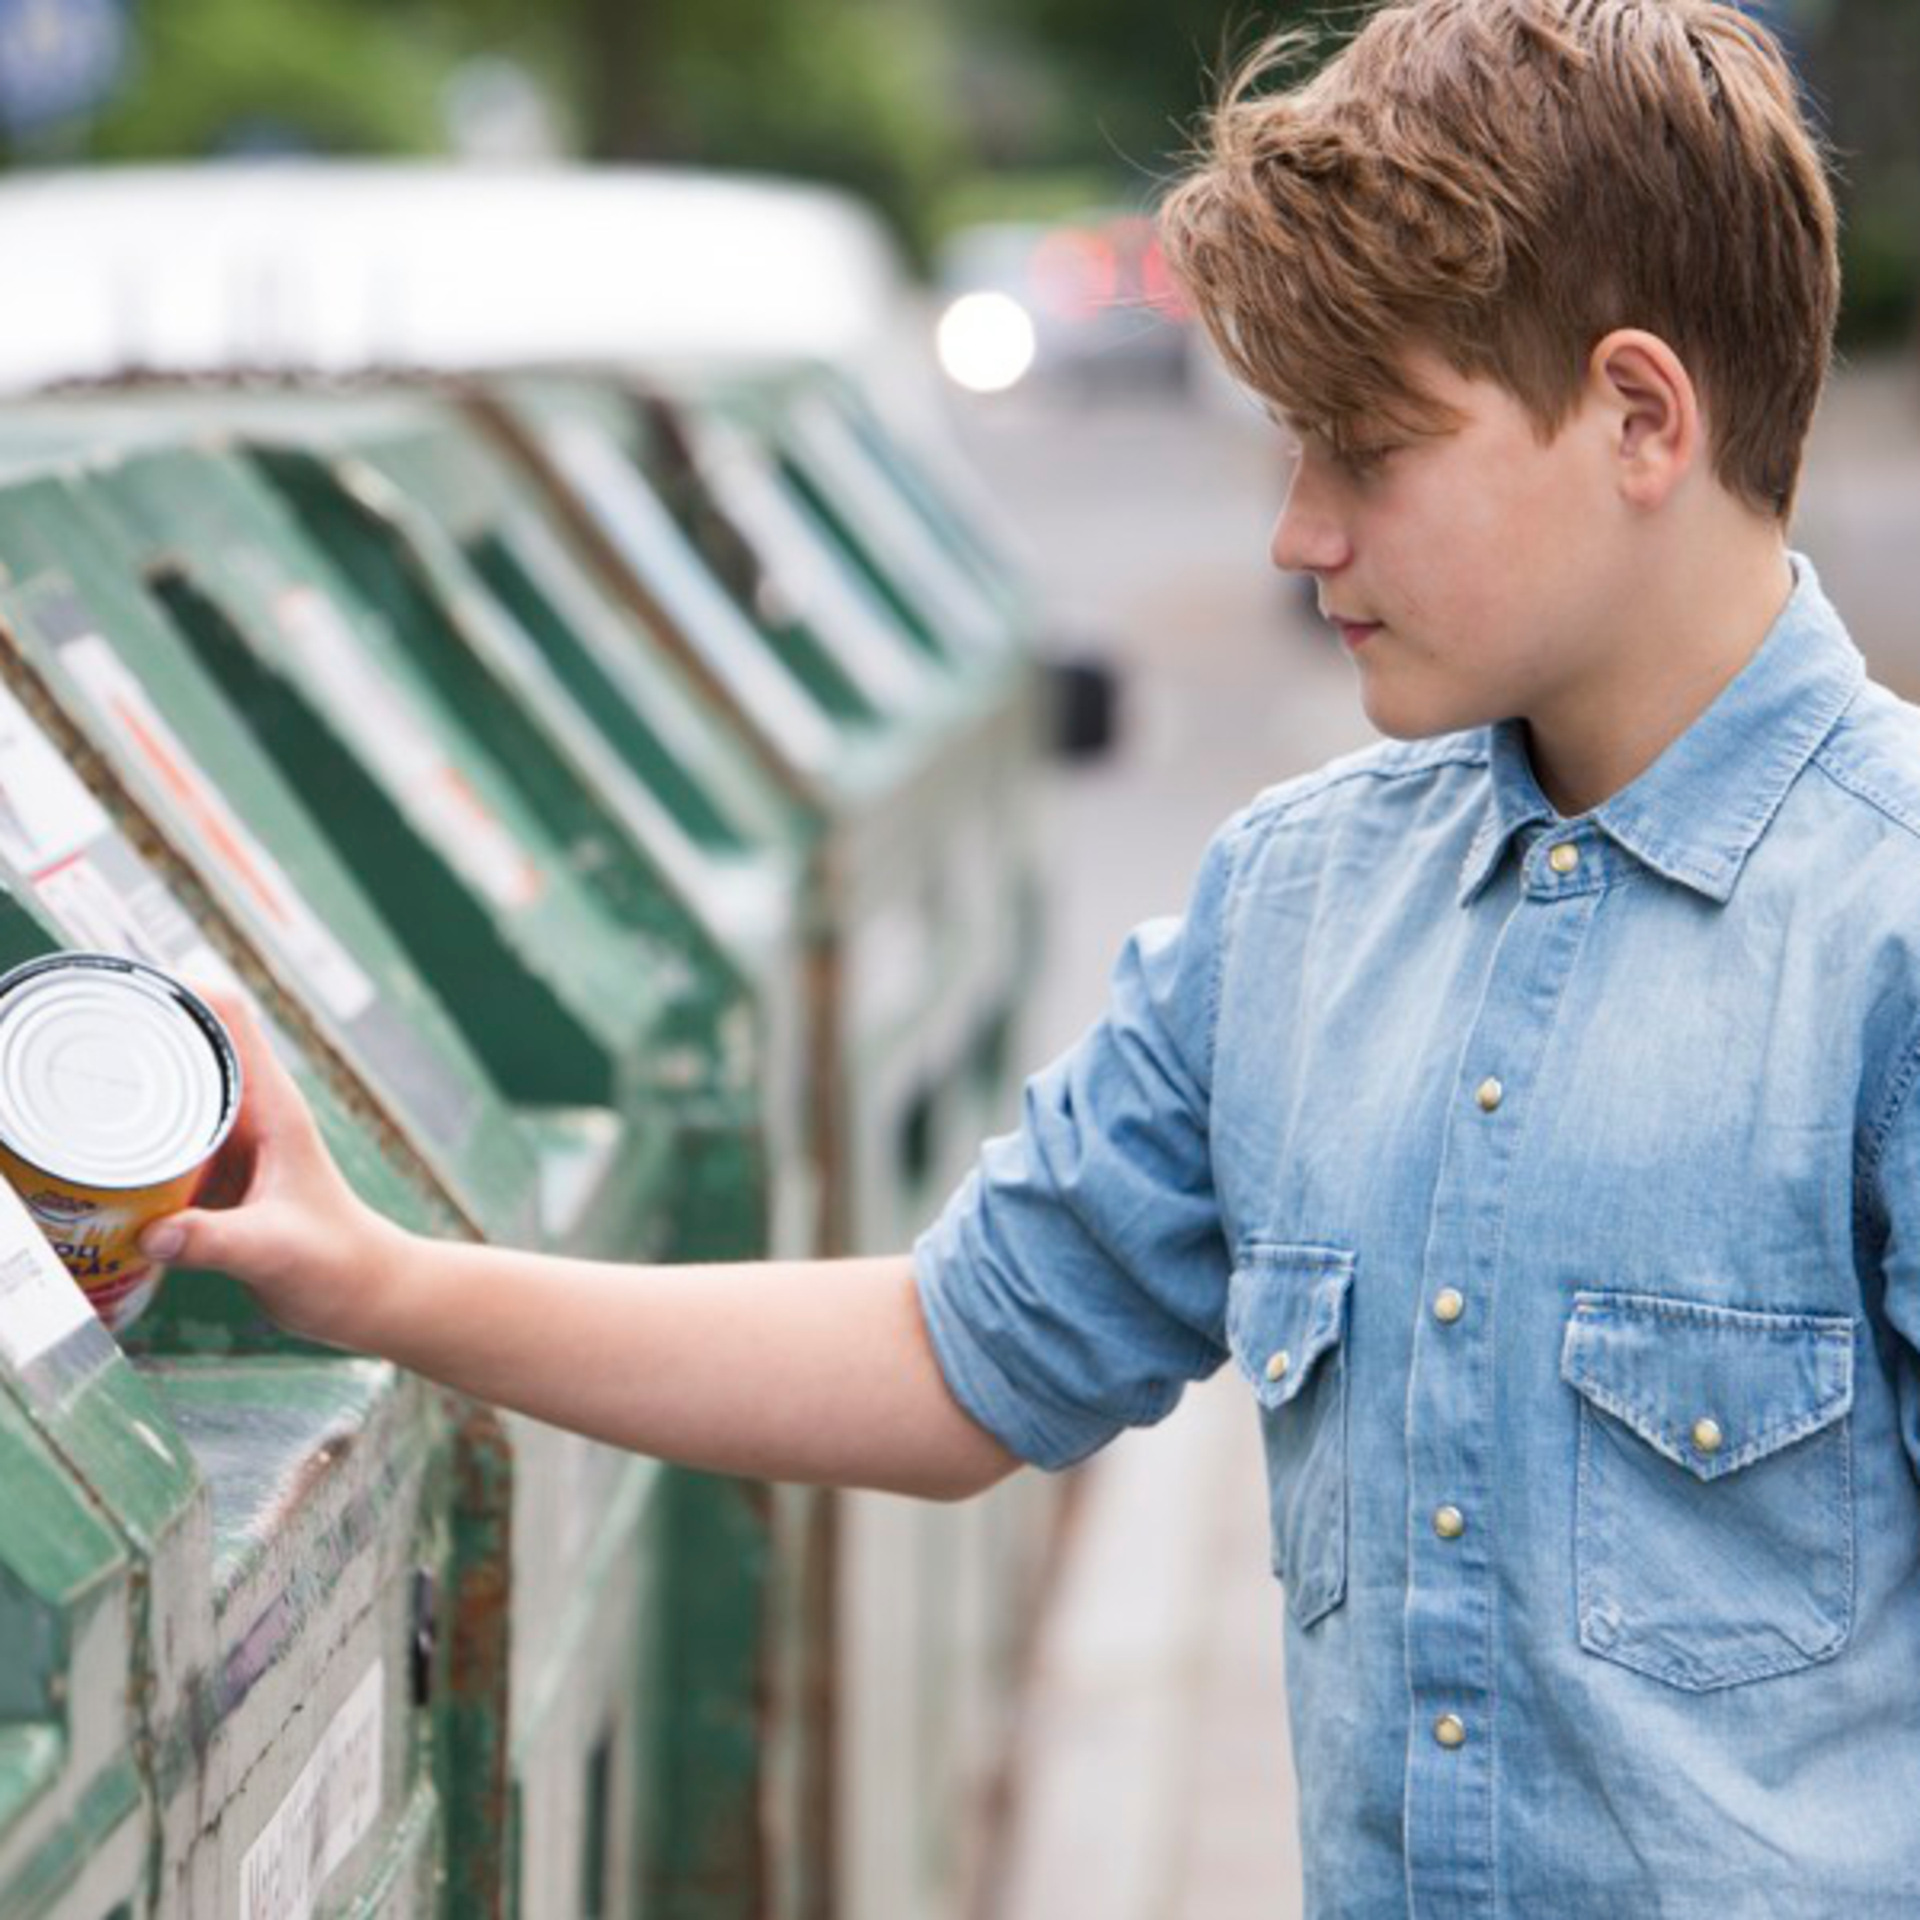 pojke stoppar in en tom förpackning till återvinning på återvinningsstation